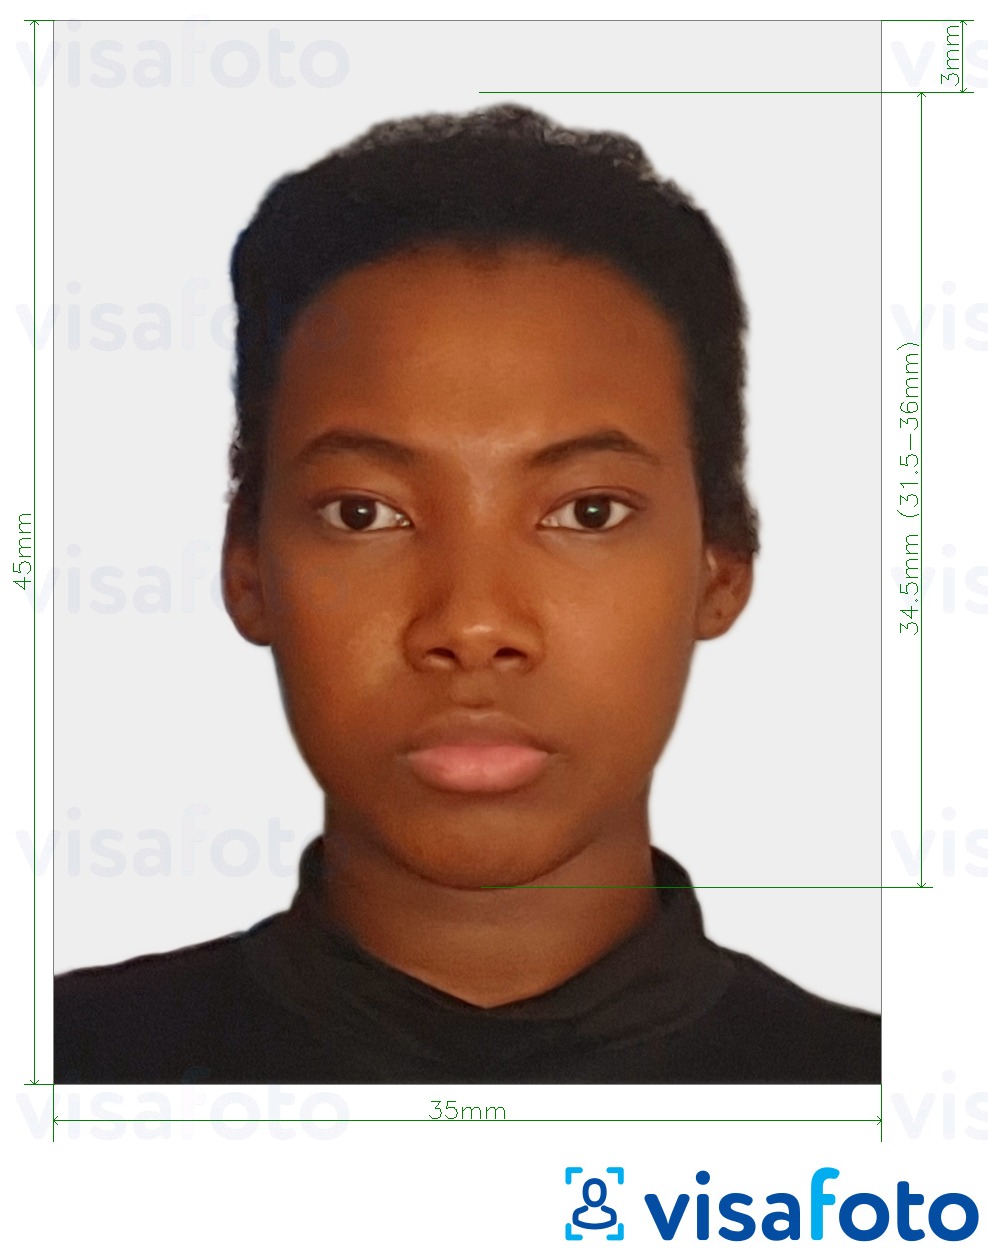 Образец фотографии для Суринамская виза онлайн с точными размерами